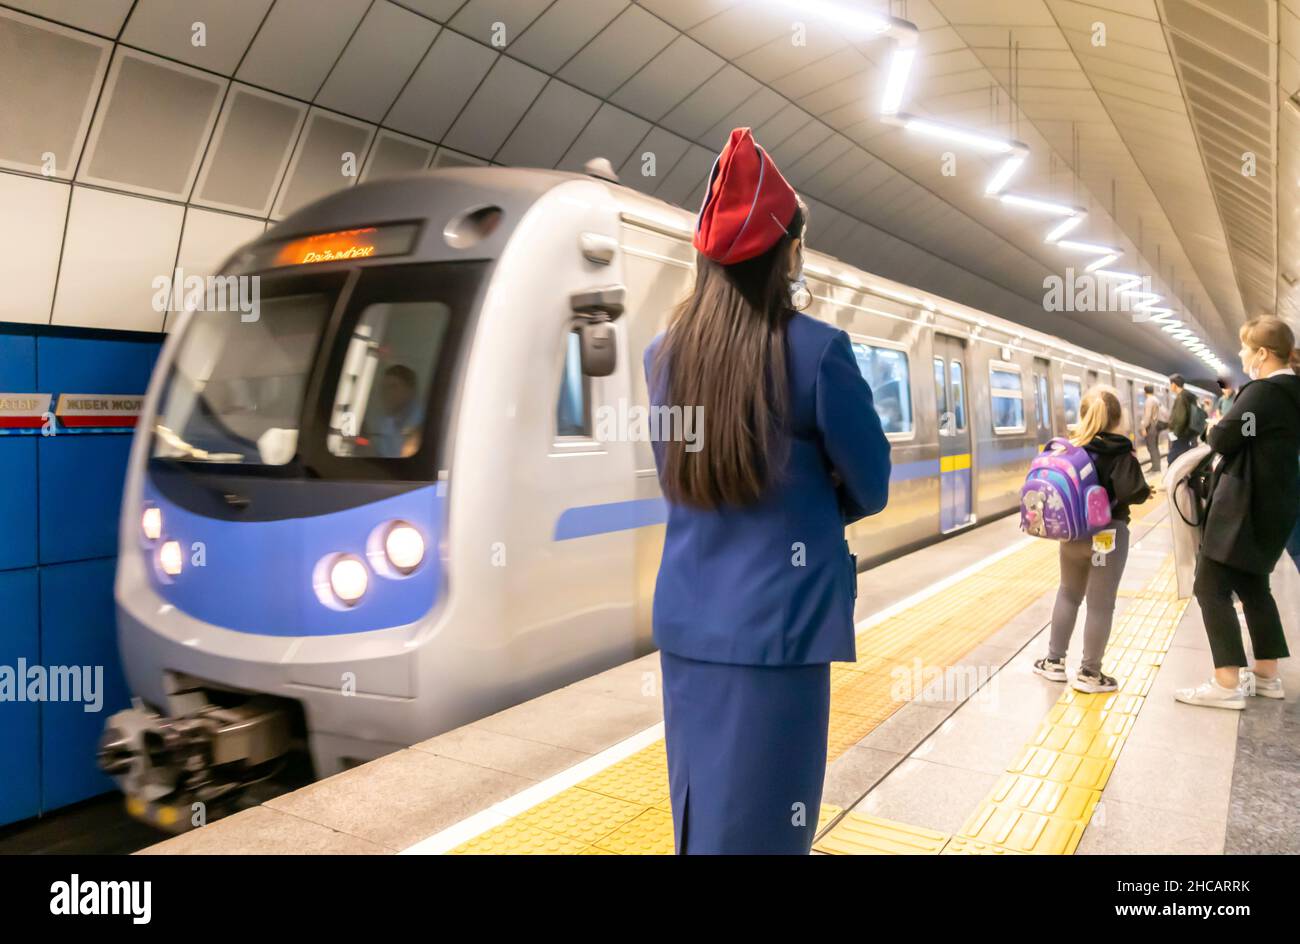 Le train arrive à la station de métro Baykonur à Almaty, Kazakhstan, Central, Asie.Employée de la métropole féminine contrôlant le trafic. Banque D'Images